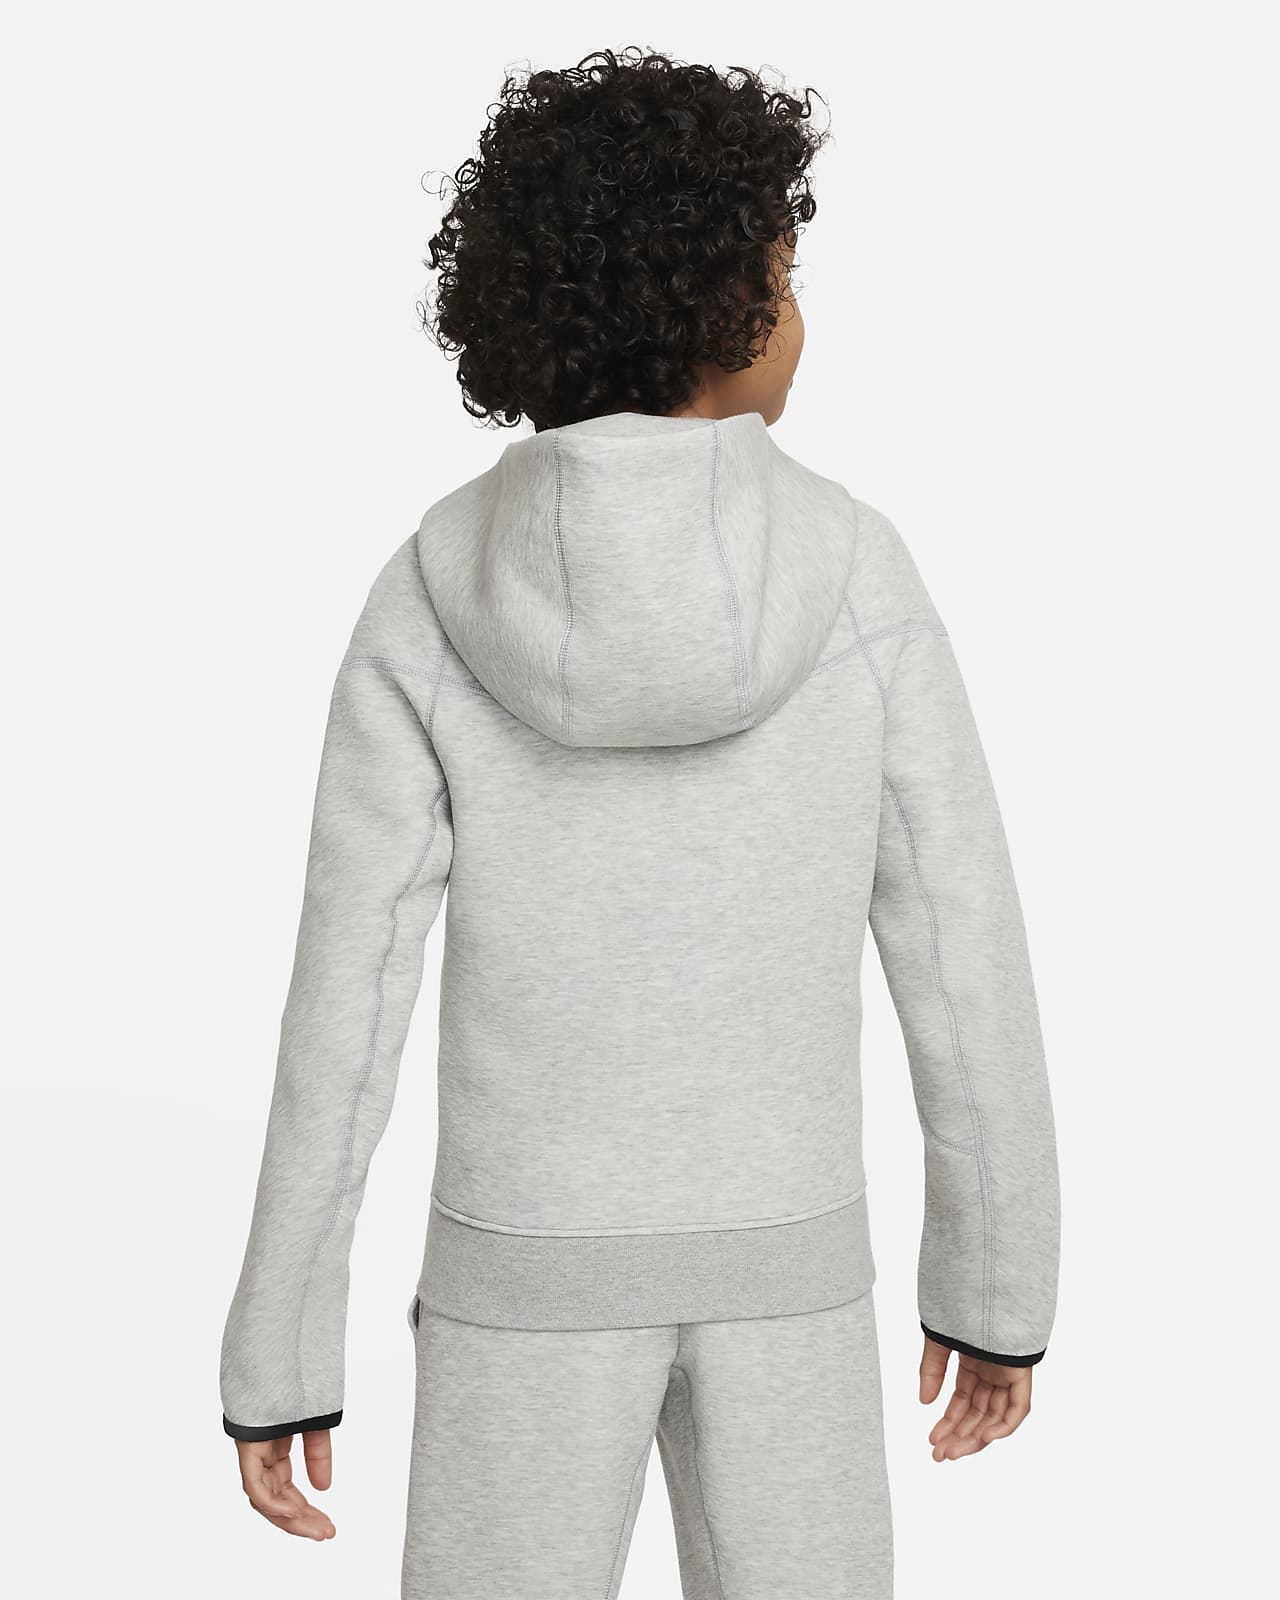 Nike Sportswear Tech Fleece Older Kids' (Boys') Full-Zip Hoodie. Nike SE